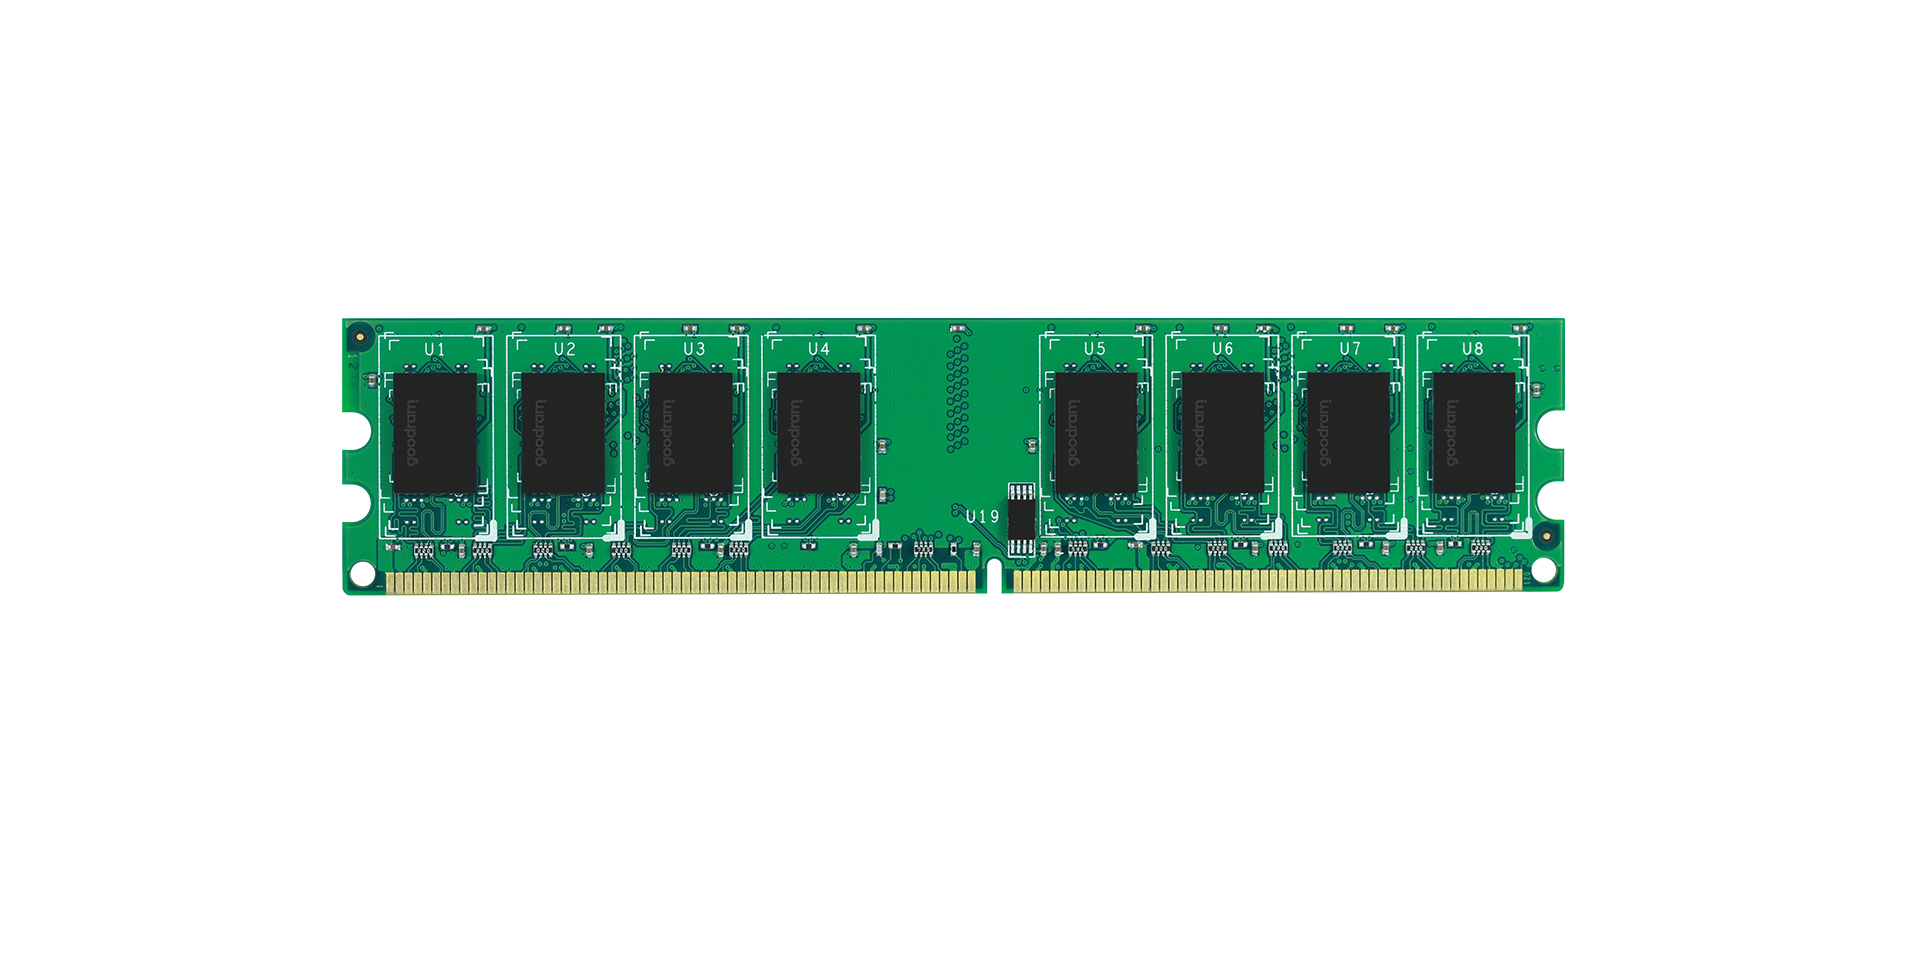 2GB DDR2 RAM